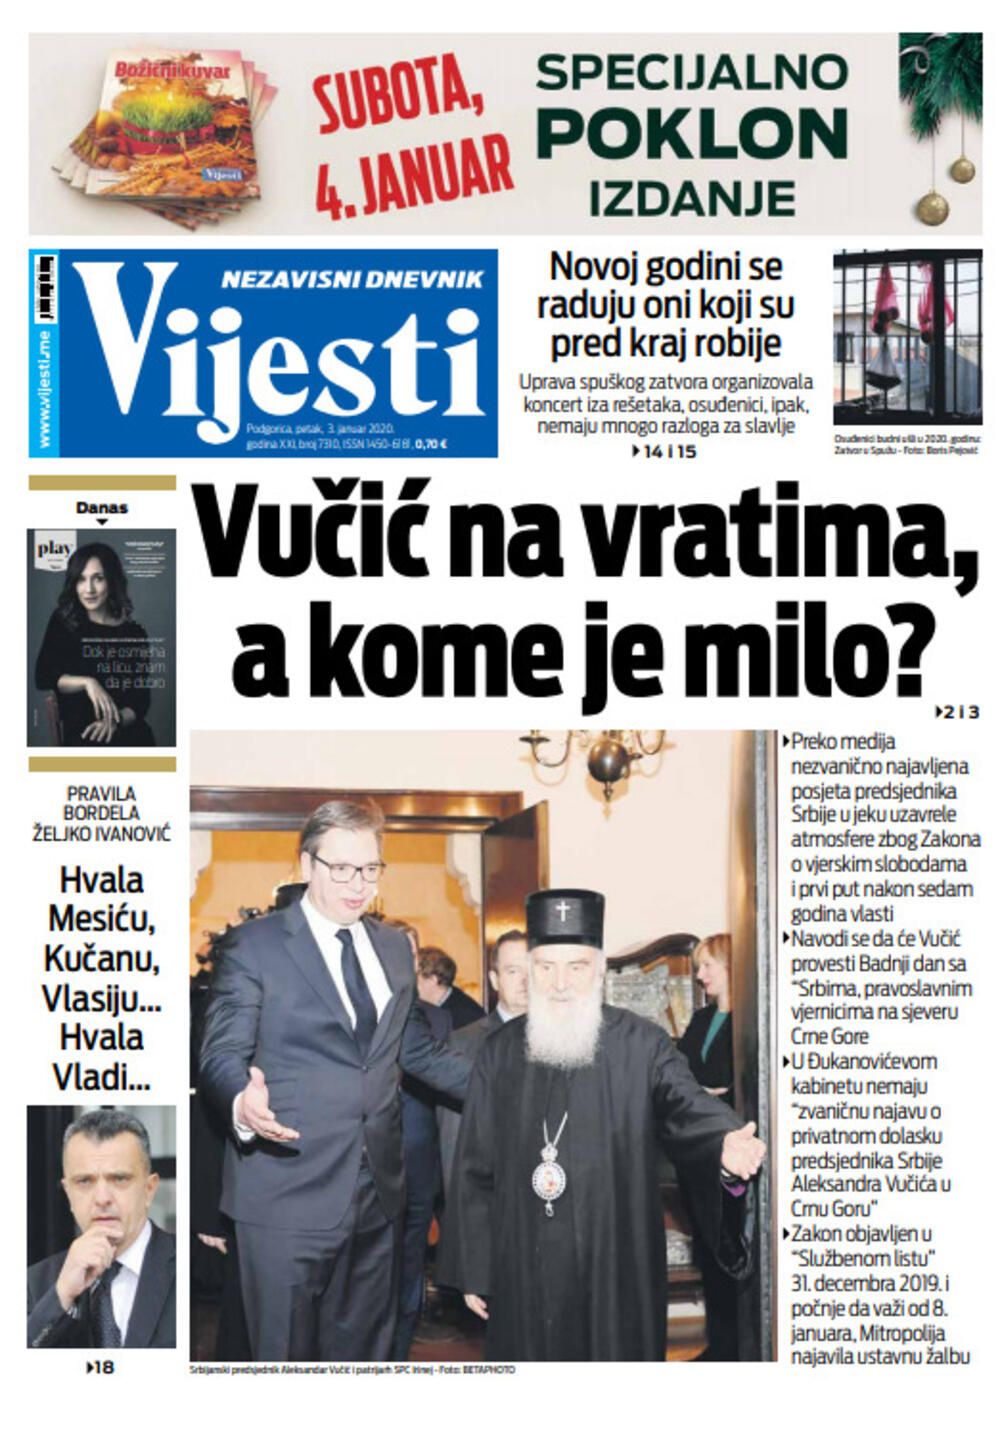 Naslovna strana "Vijesti" za treći januar, Foto: "Vijesti"